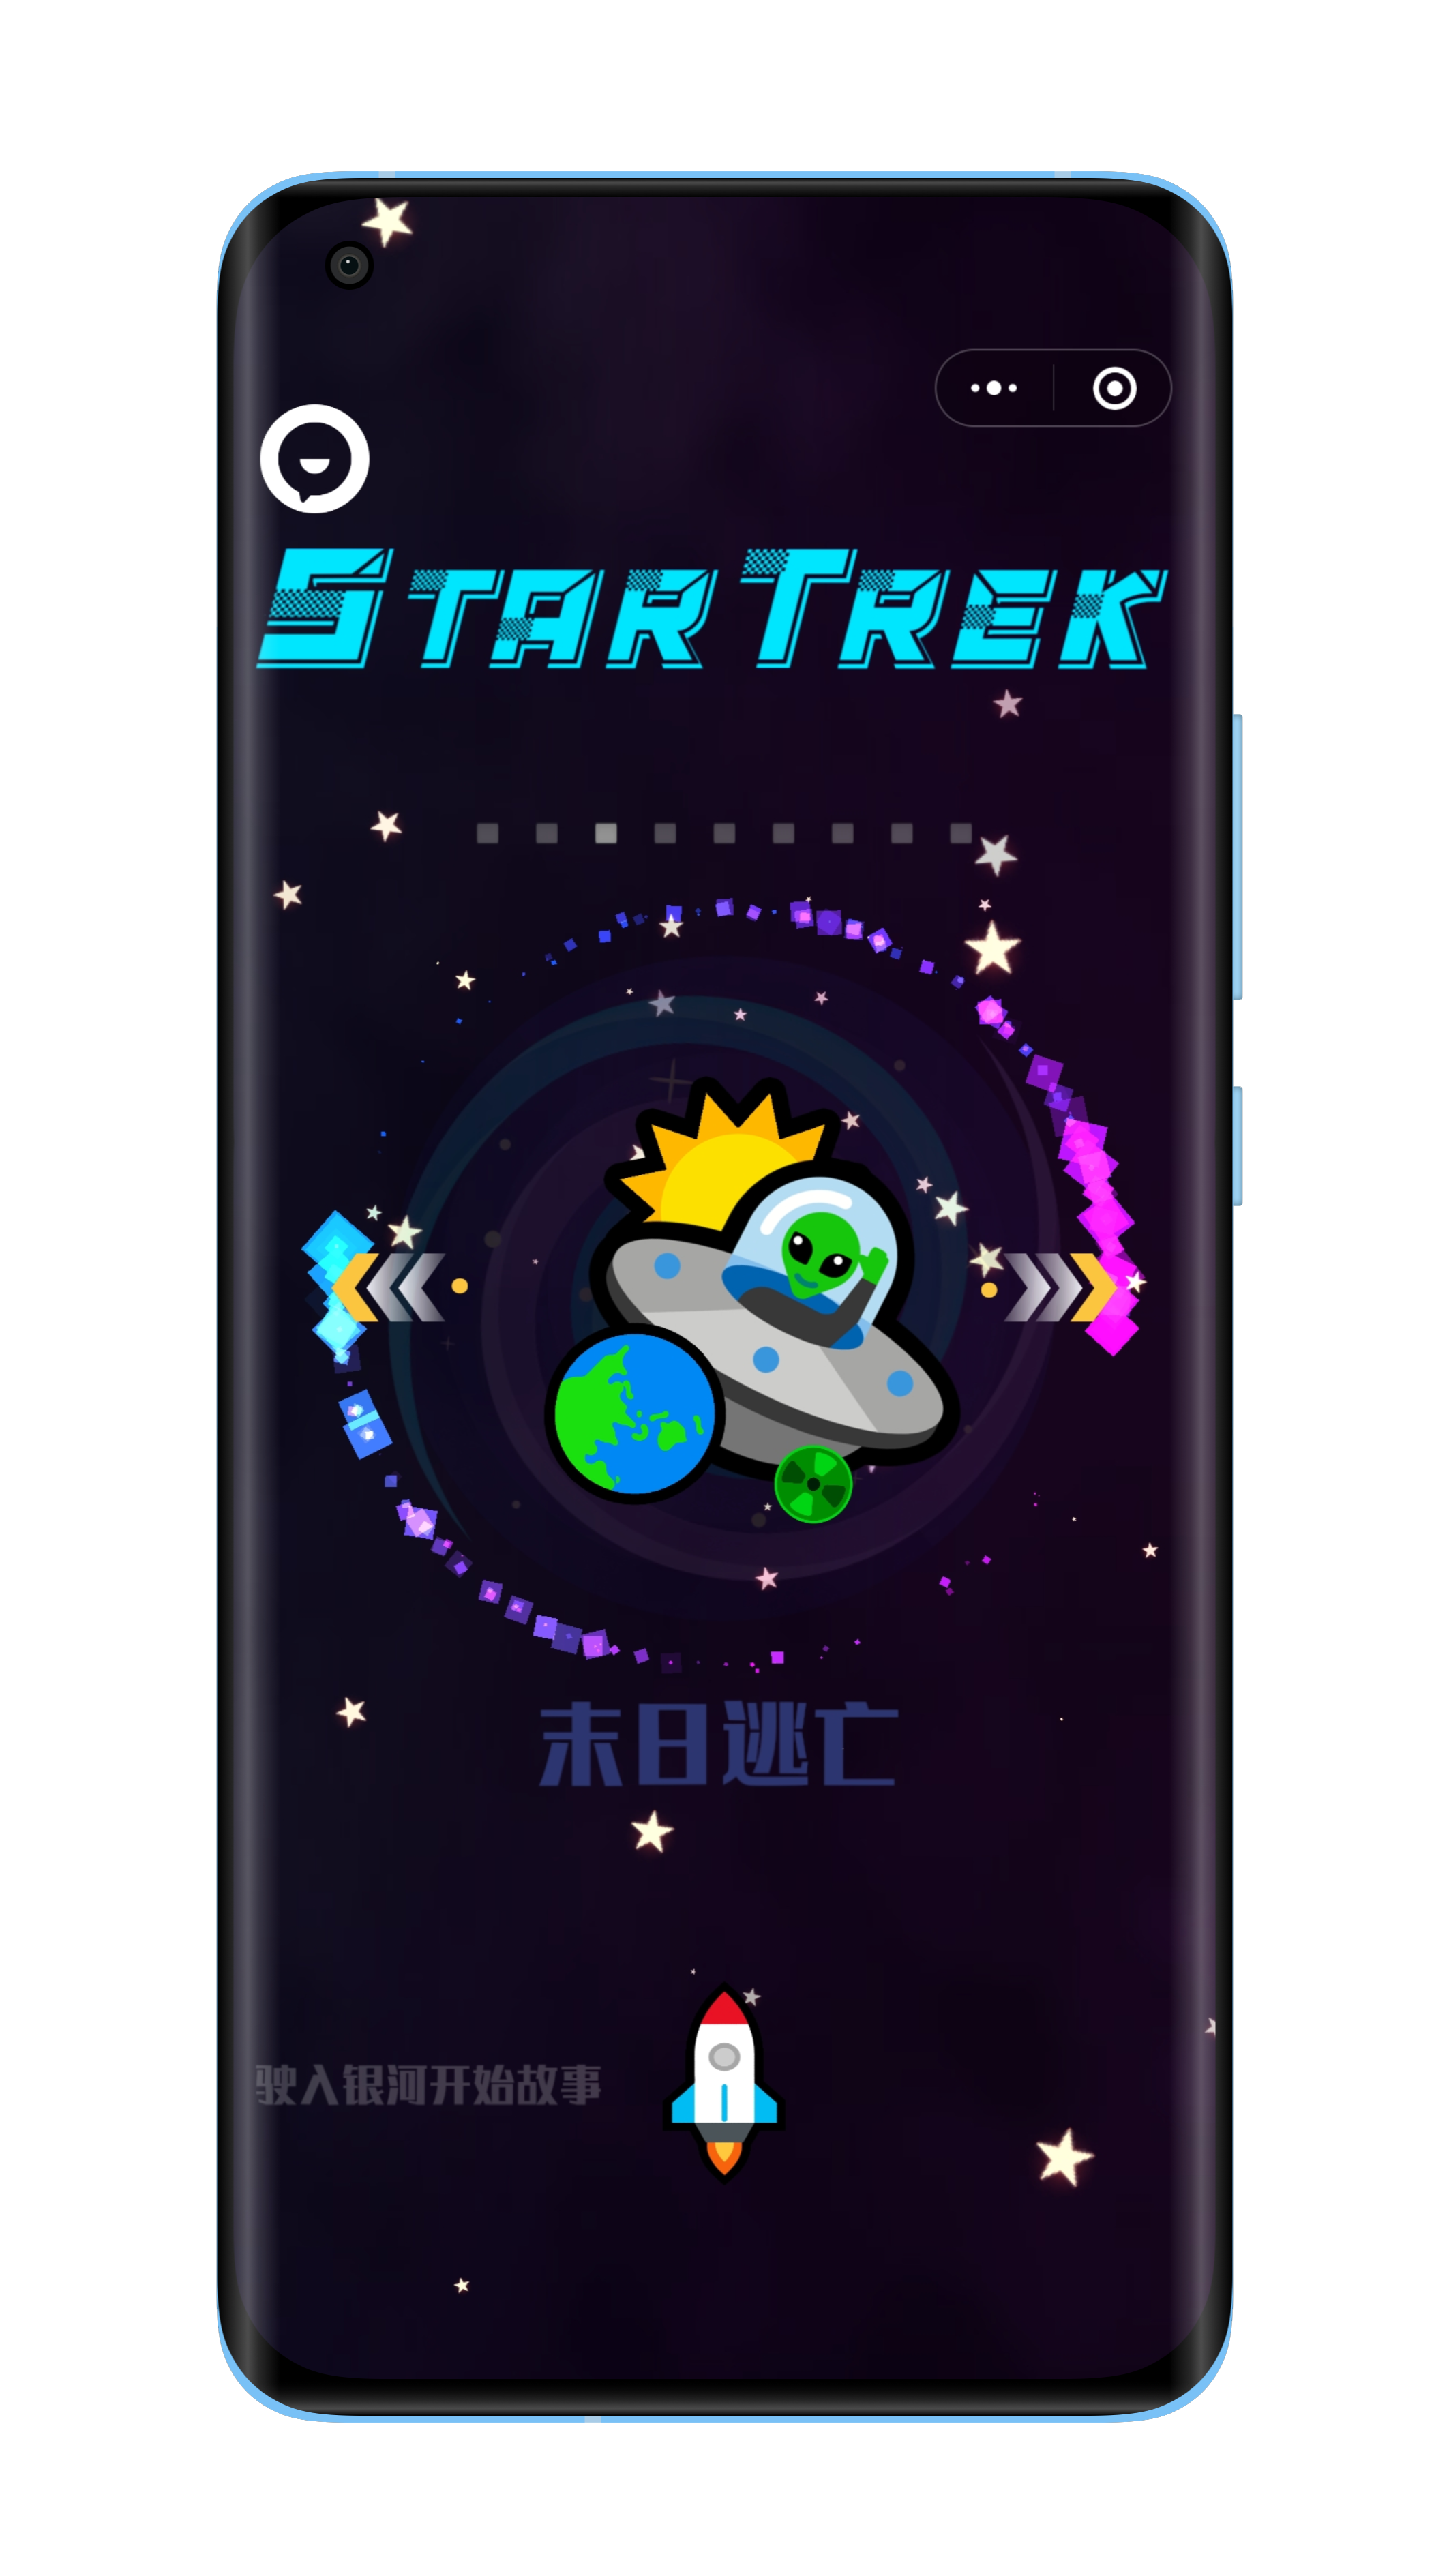 图6一等奖作品星旅 StarTrek.png